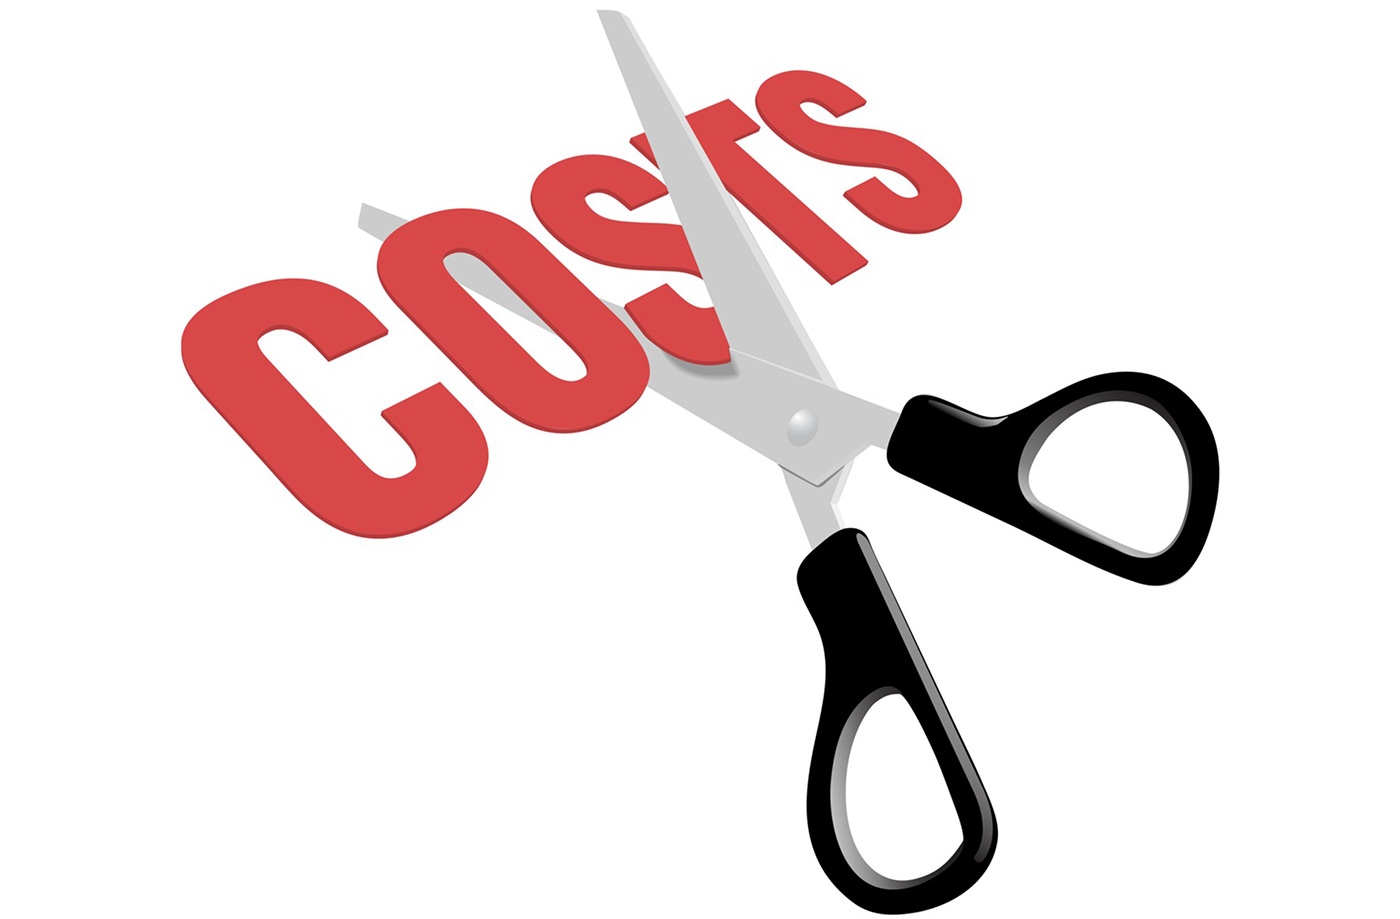 Chi phí kinh doanh có thể tiết kiệm được tối đa bằng cách nào?